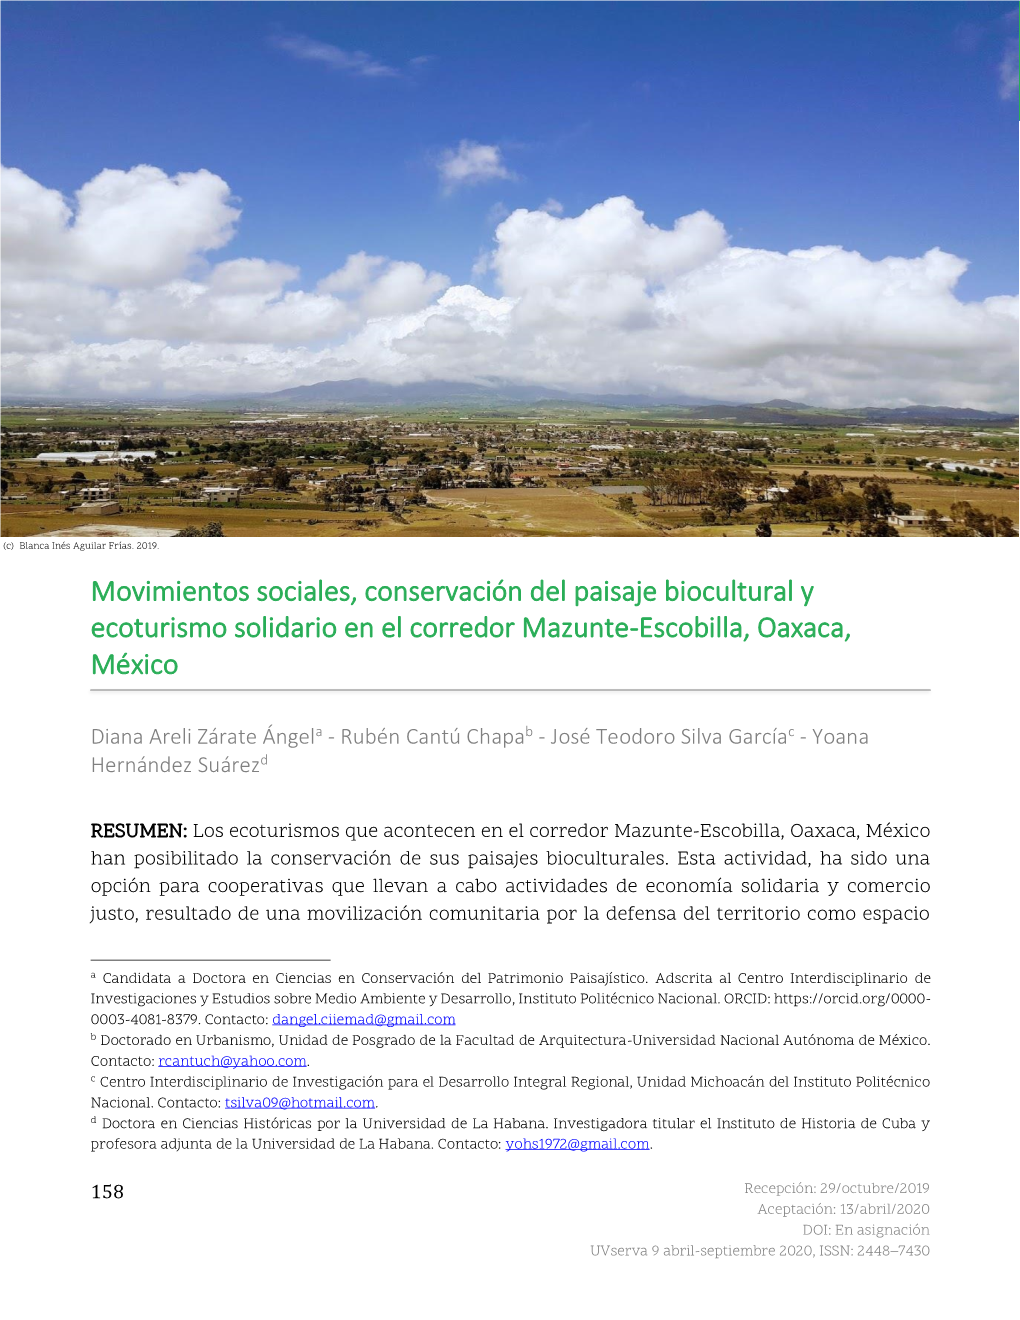 Movimientos Sociales, Conservación Del Paisaje Biocultural Y Ecoturismo Solidario En El Corredor Mazunte-Escobilla, Oaxaca, México